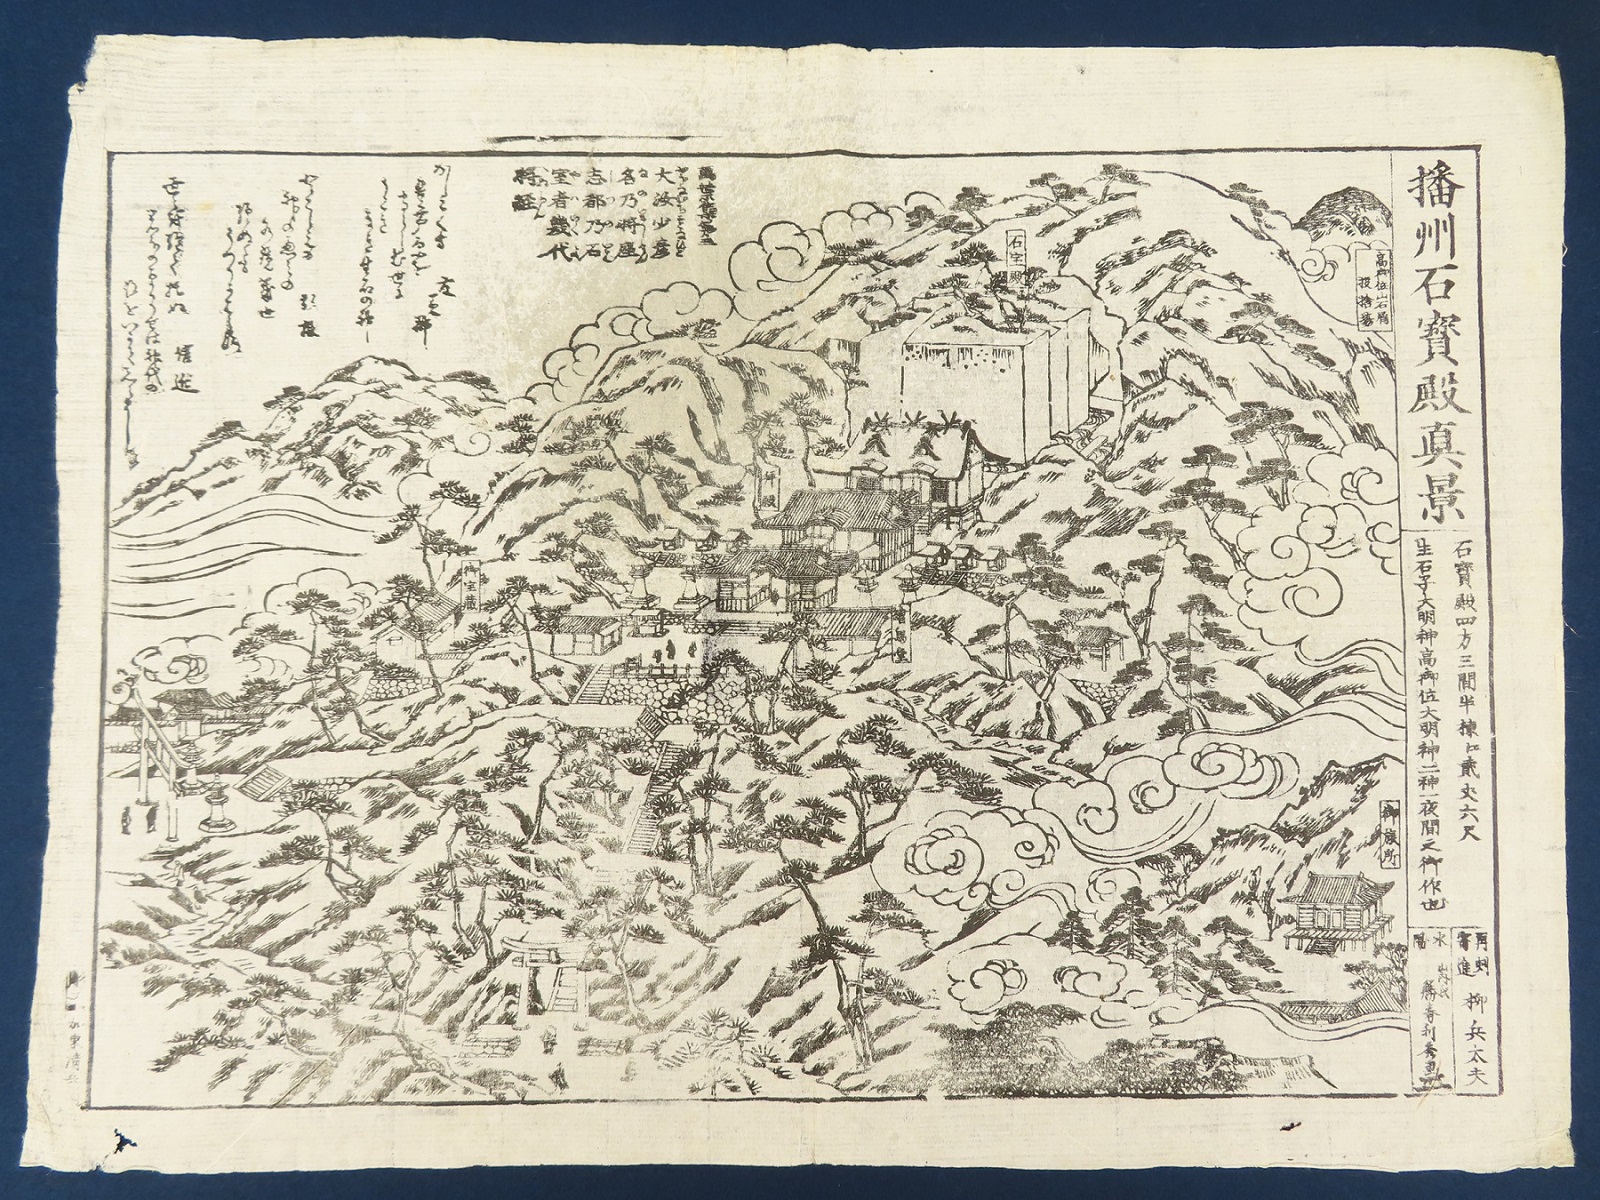 神戸 古本買取 古書出張買取 刷り物 古地図